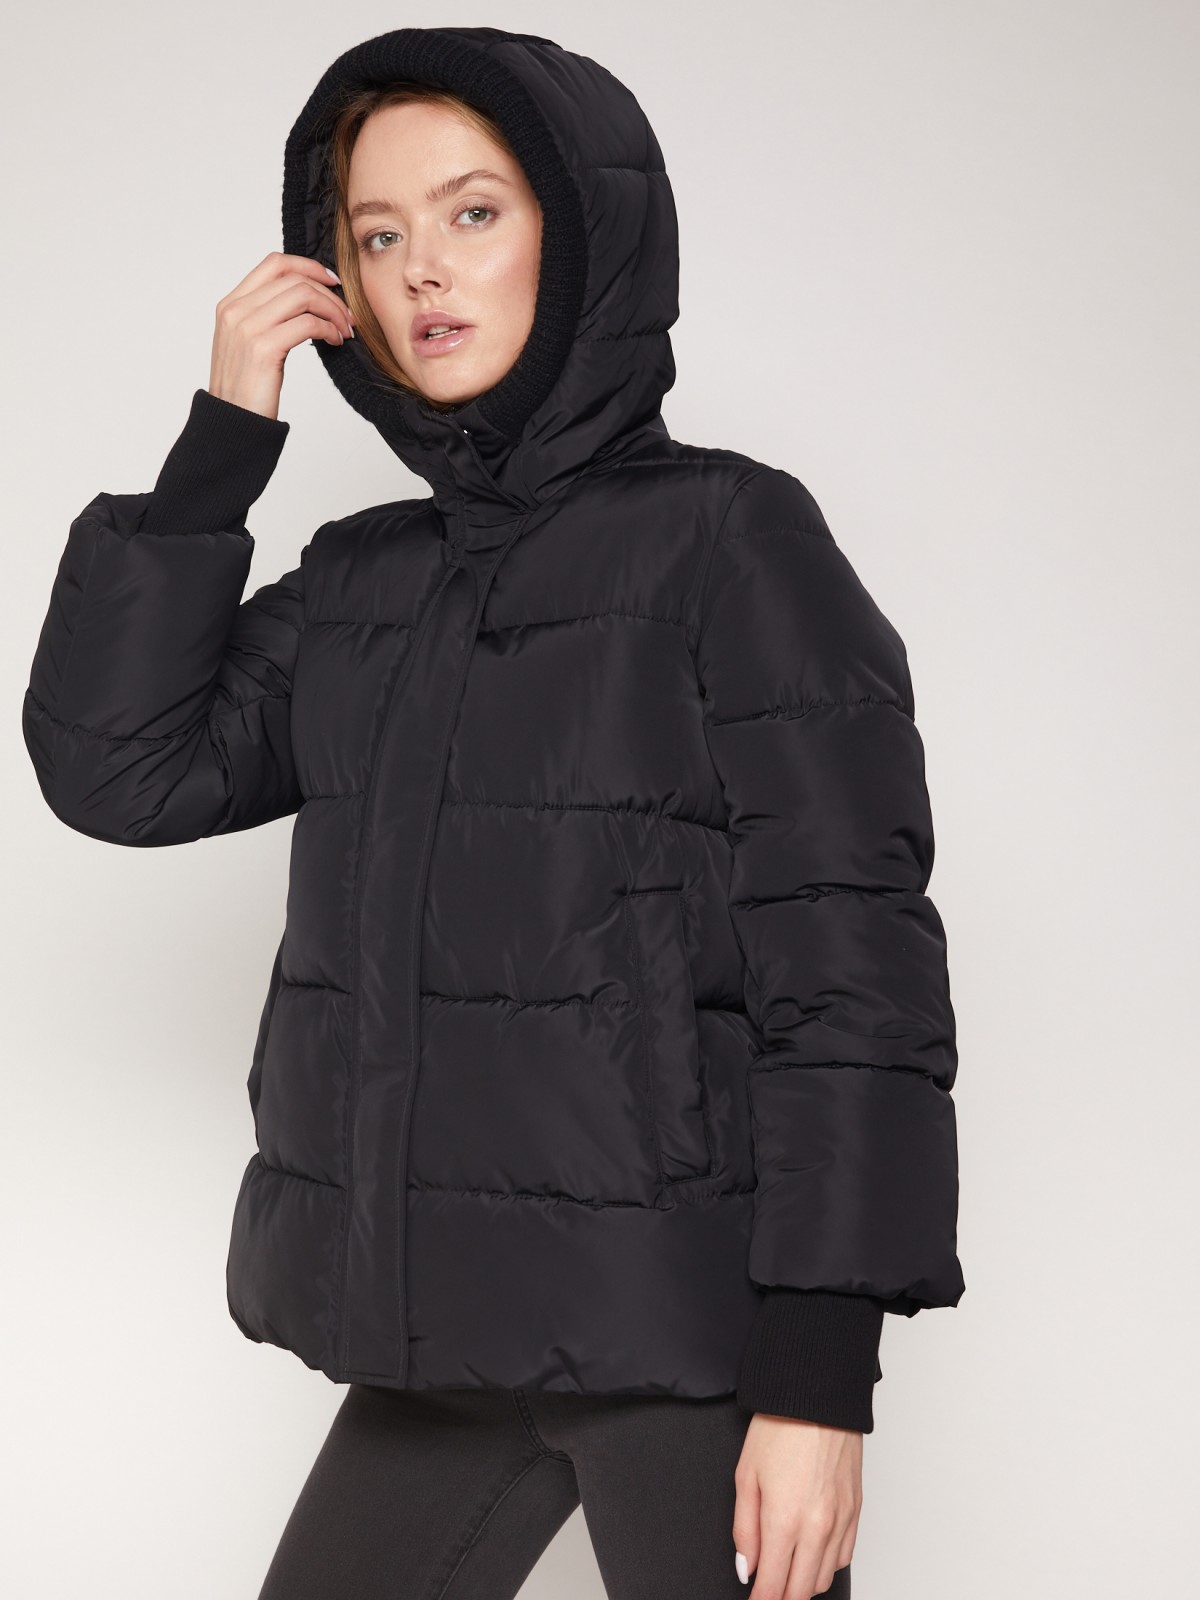 Тёплая стёганая куртка с капюшоном zolla 021335102264, цвет черный, размер S - фото 5